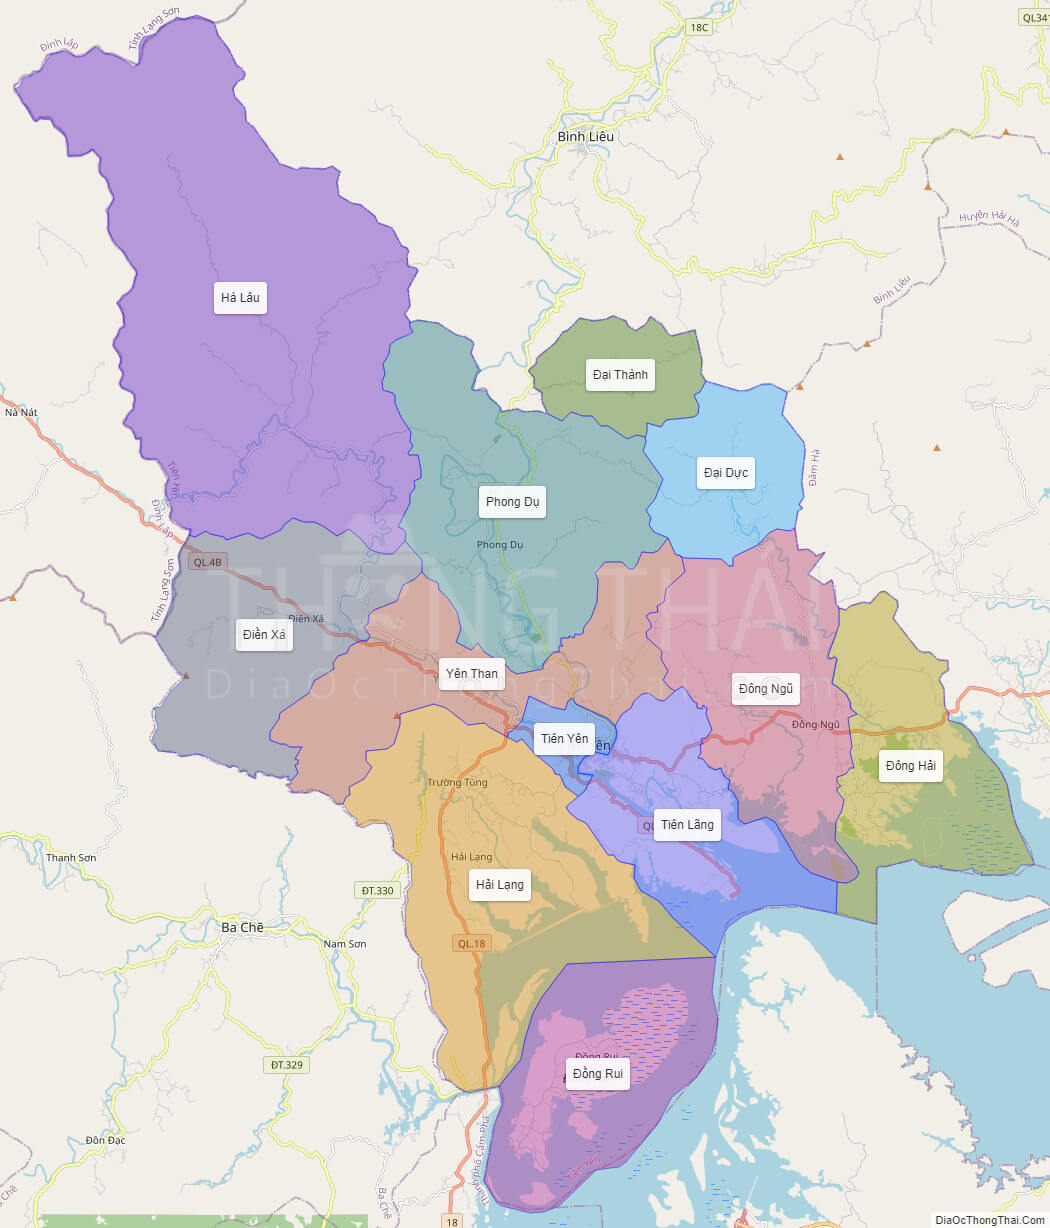 Với bản đồ huyện Tiên Yên Quảng Ninh, người dùng sẽ thấy được vẻ đẹp hoang sơ mà vẫn còn giữ được nét truyền thống văn hóa dân tộc. Bản đồ được cập nhật liên tục để đáp ứng nhu cầu tìm kiếm thông tin của người dùng.